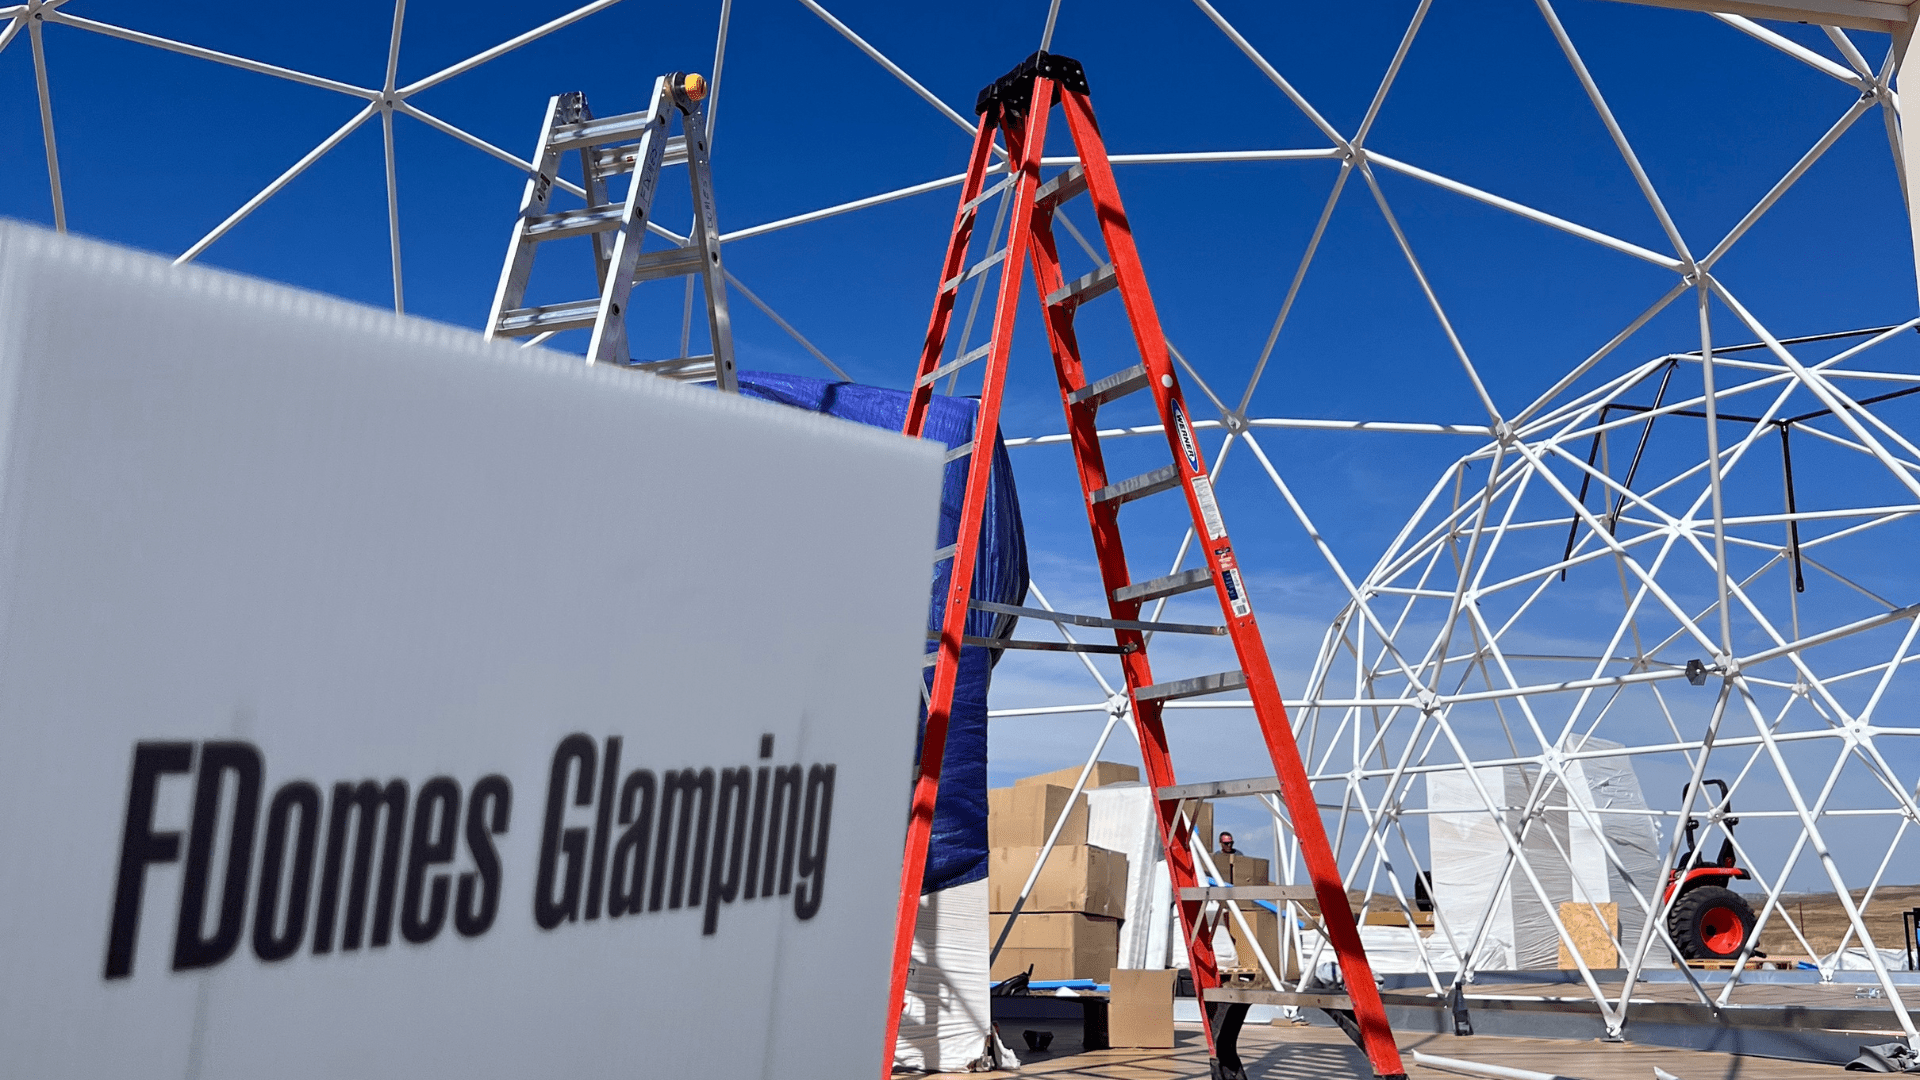 FDomes Glamping while at GSA 2023 in Colorado, USA.